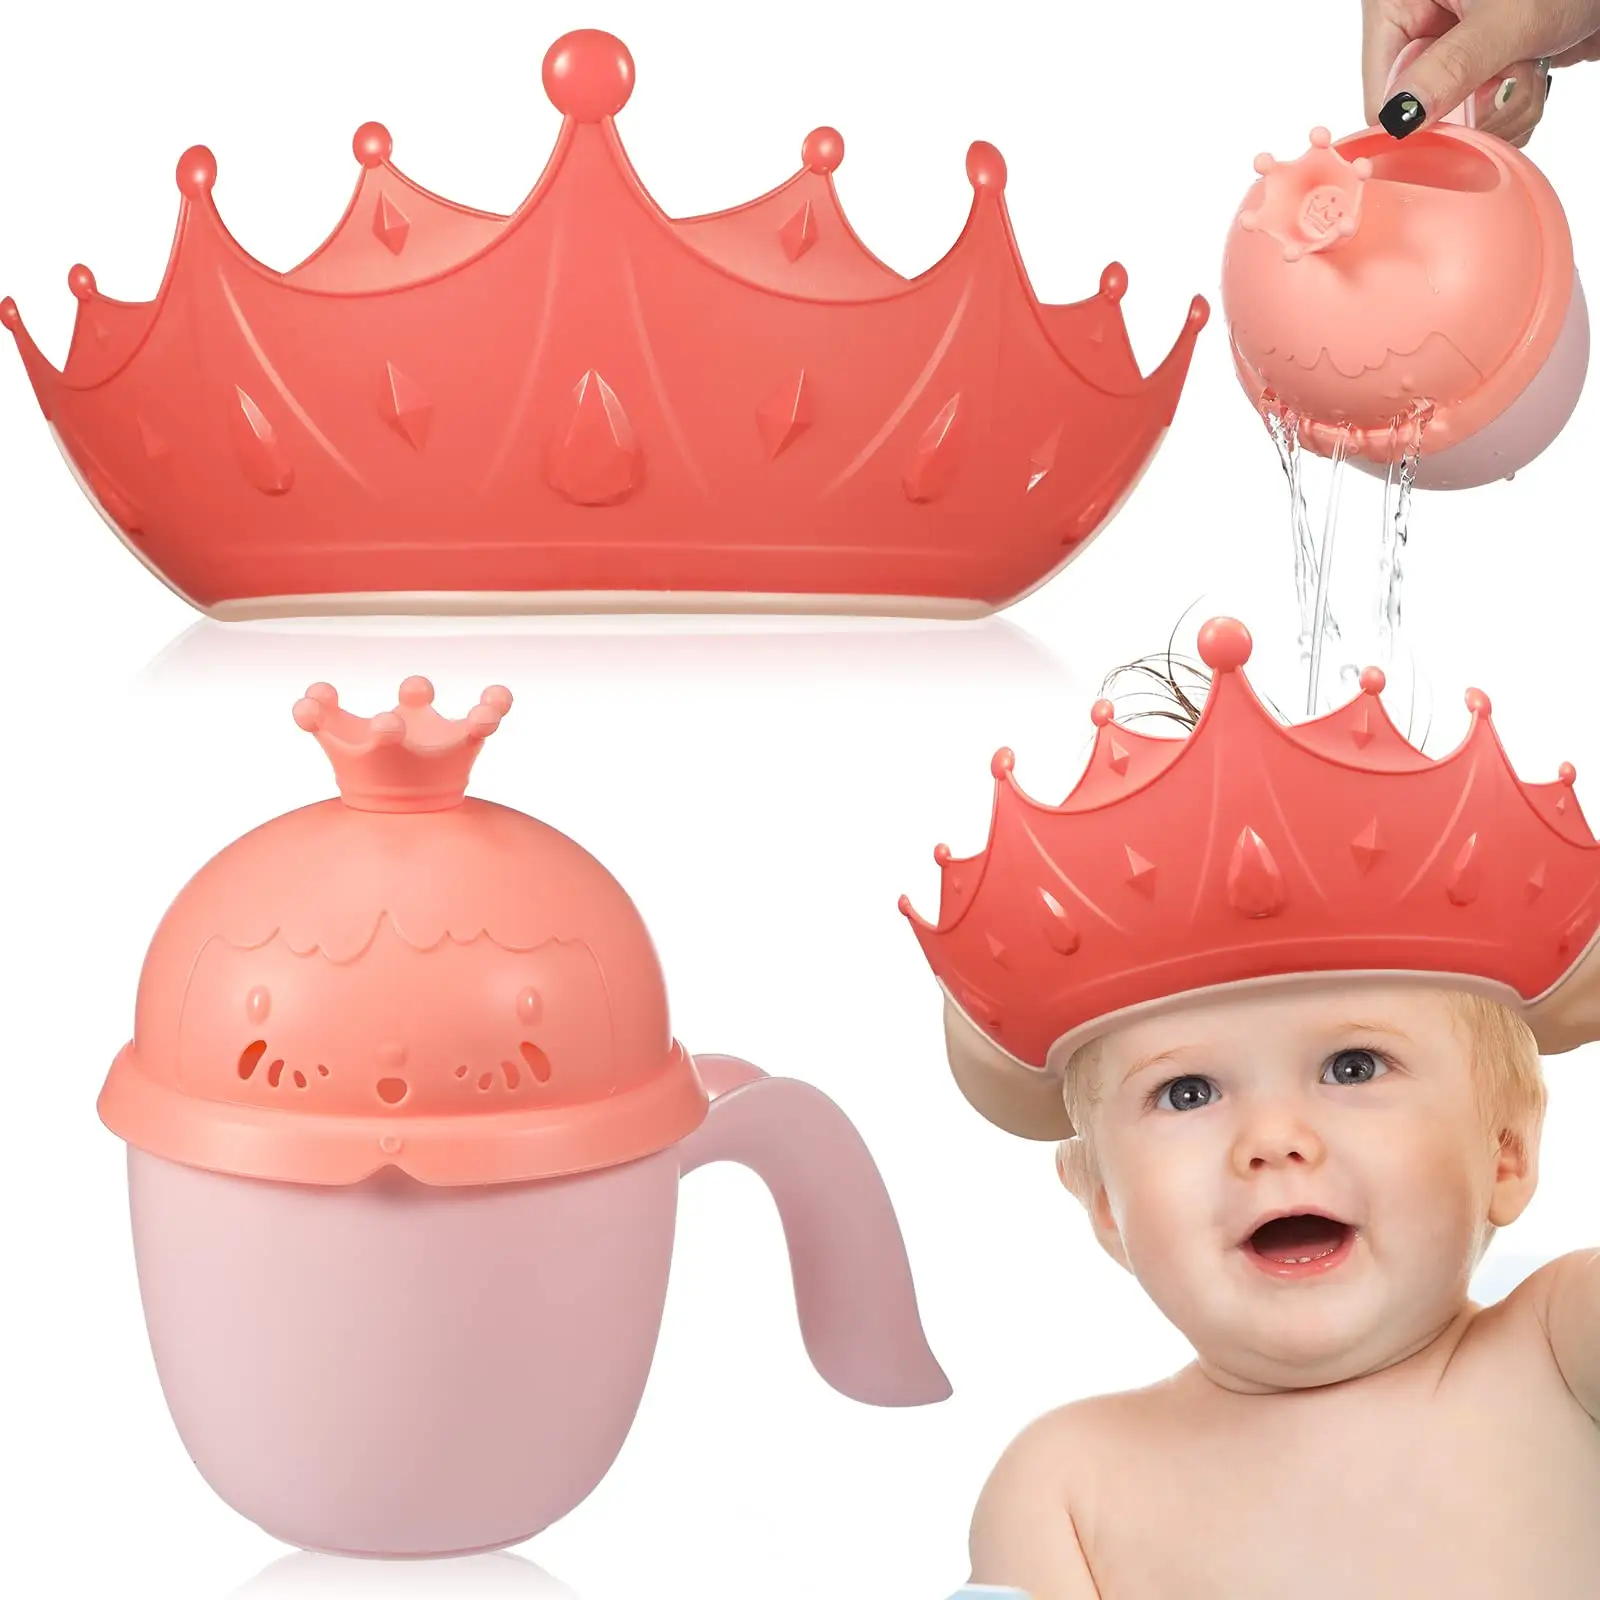 OEM/ODM قبعة ناعمة لغسيل الشعر للأطفال دش قابل للتعديل قبعة استحمام آمنة للأطفال بالشامبو والاستحمام